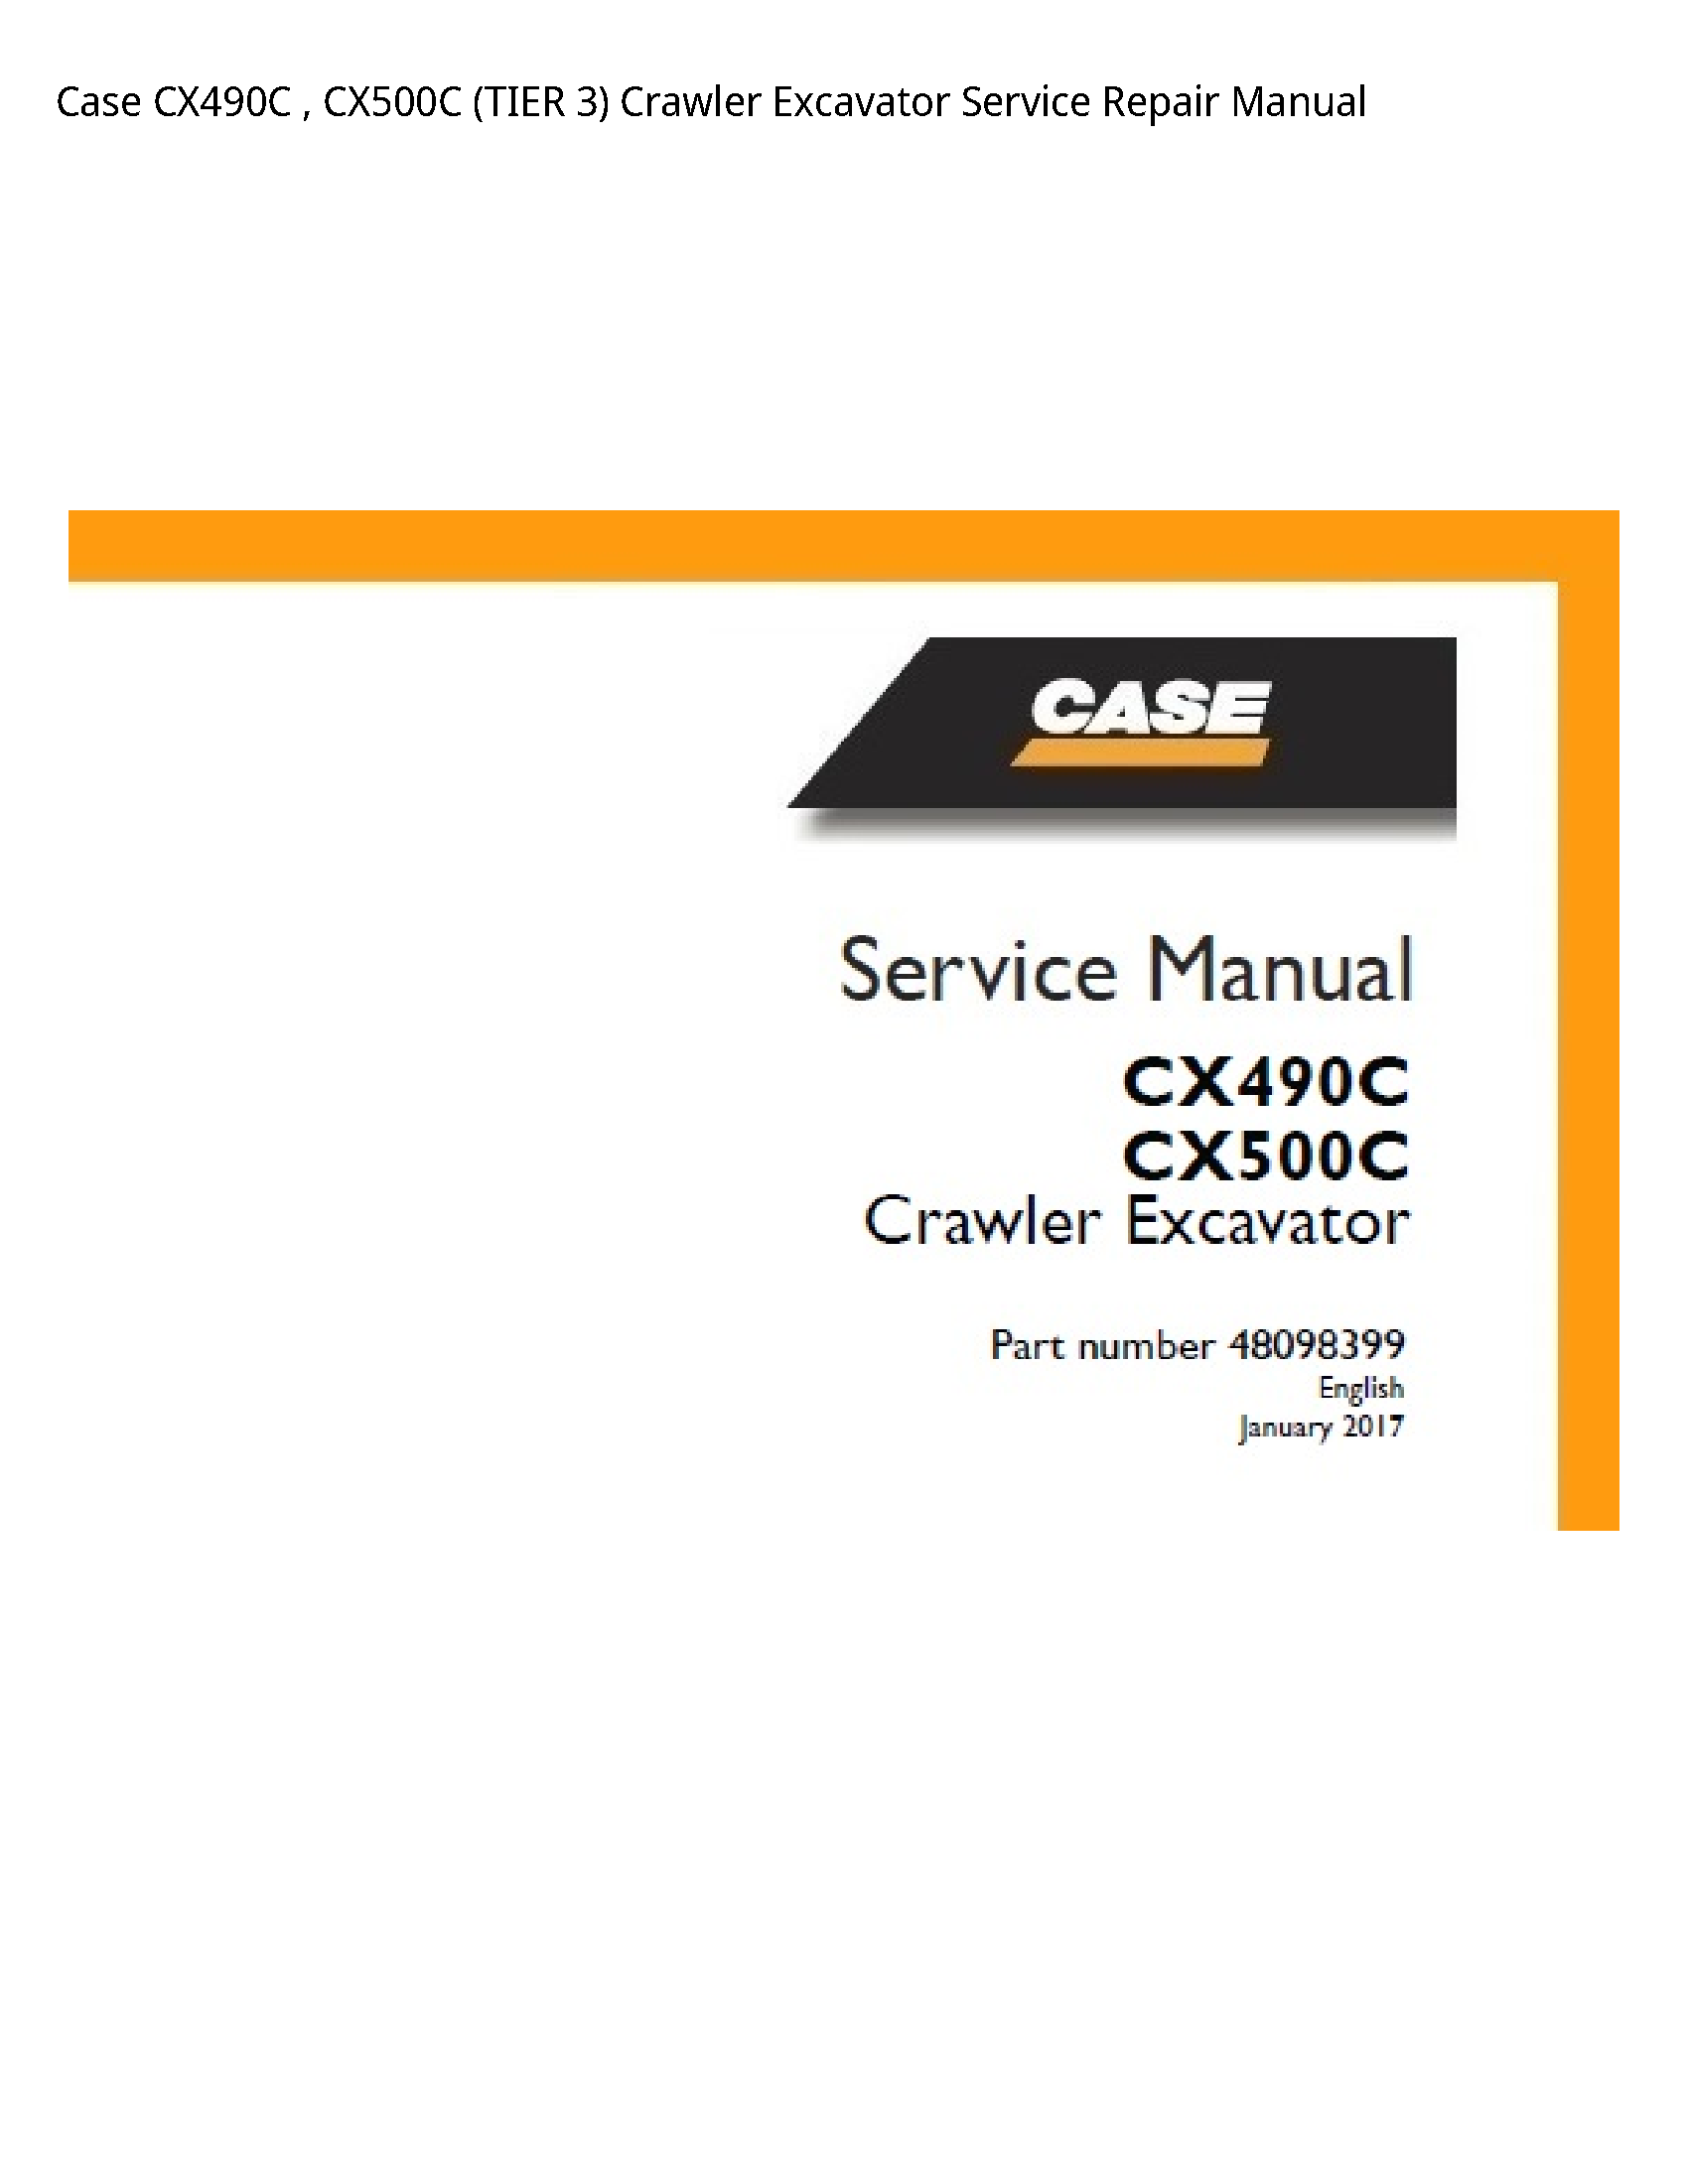 Case/Case IH CX490C (TIER Crawler Excavator manual